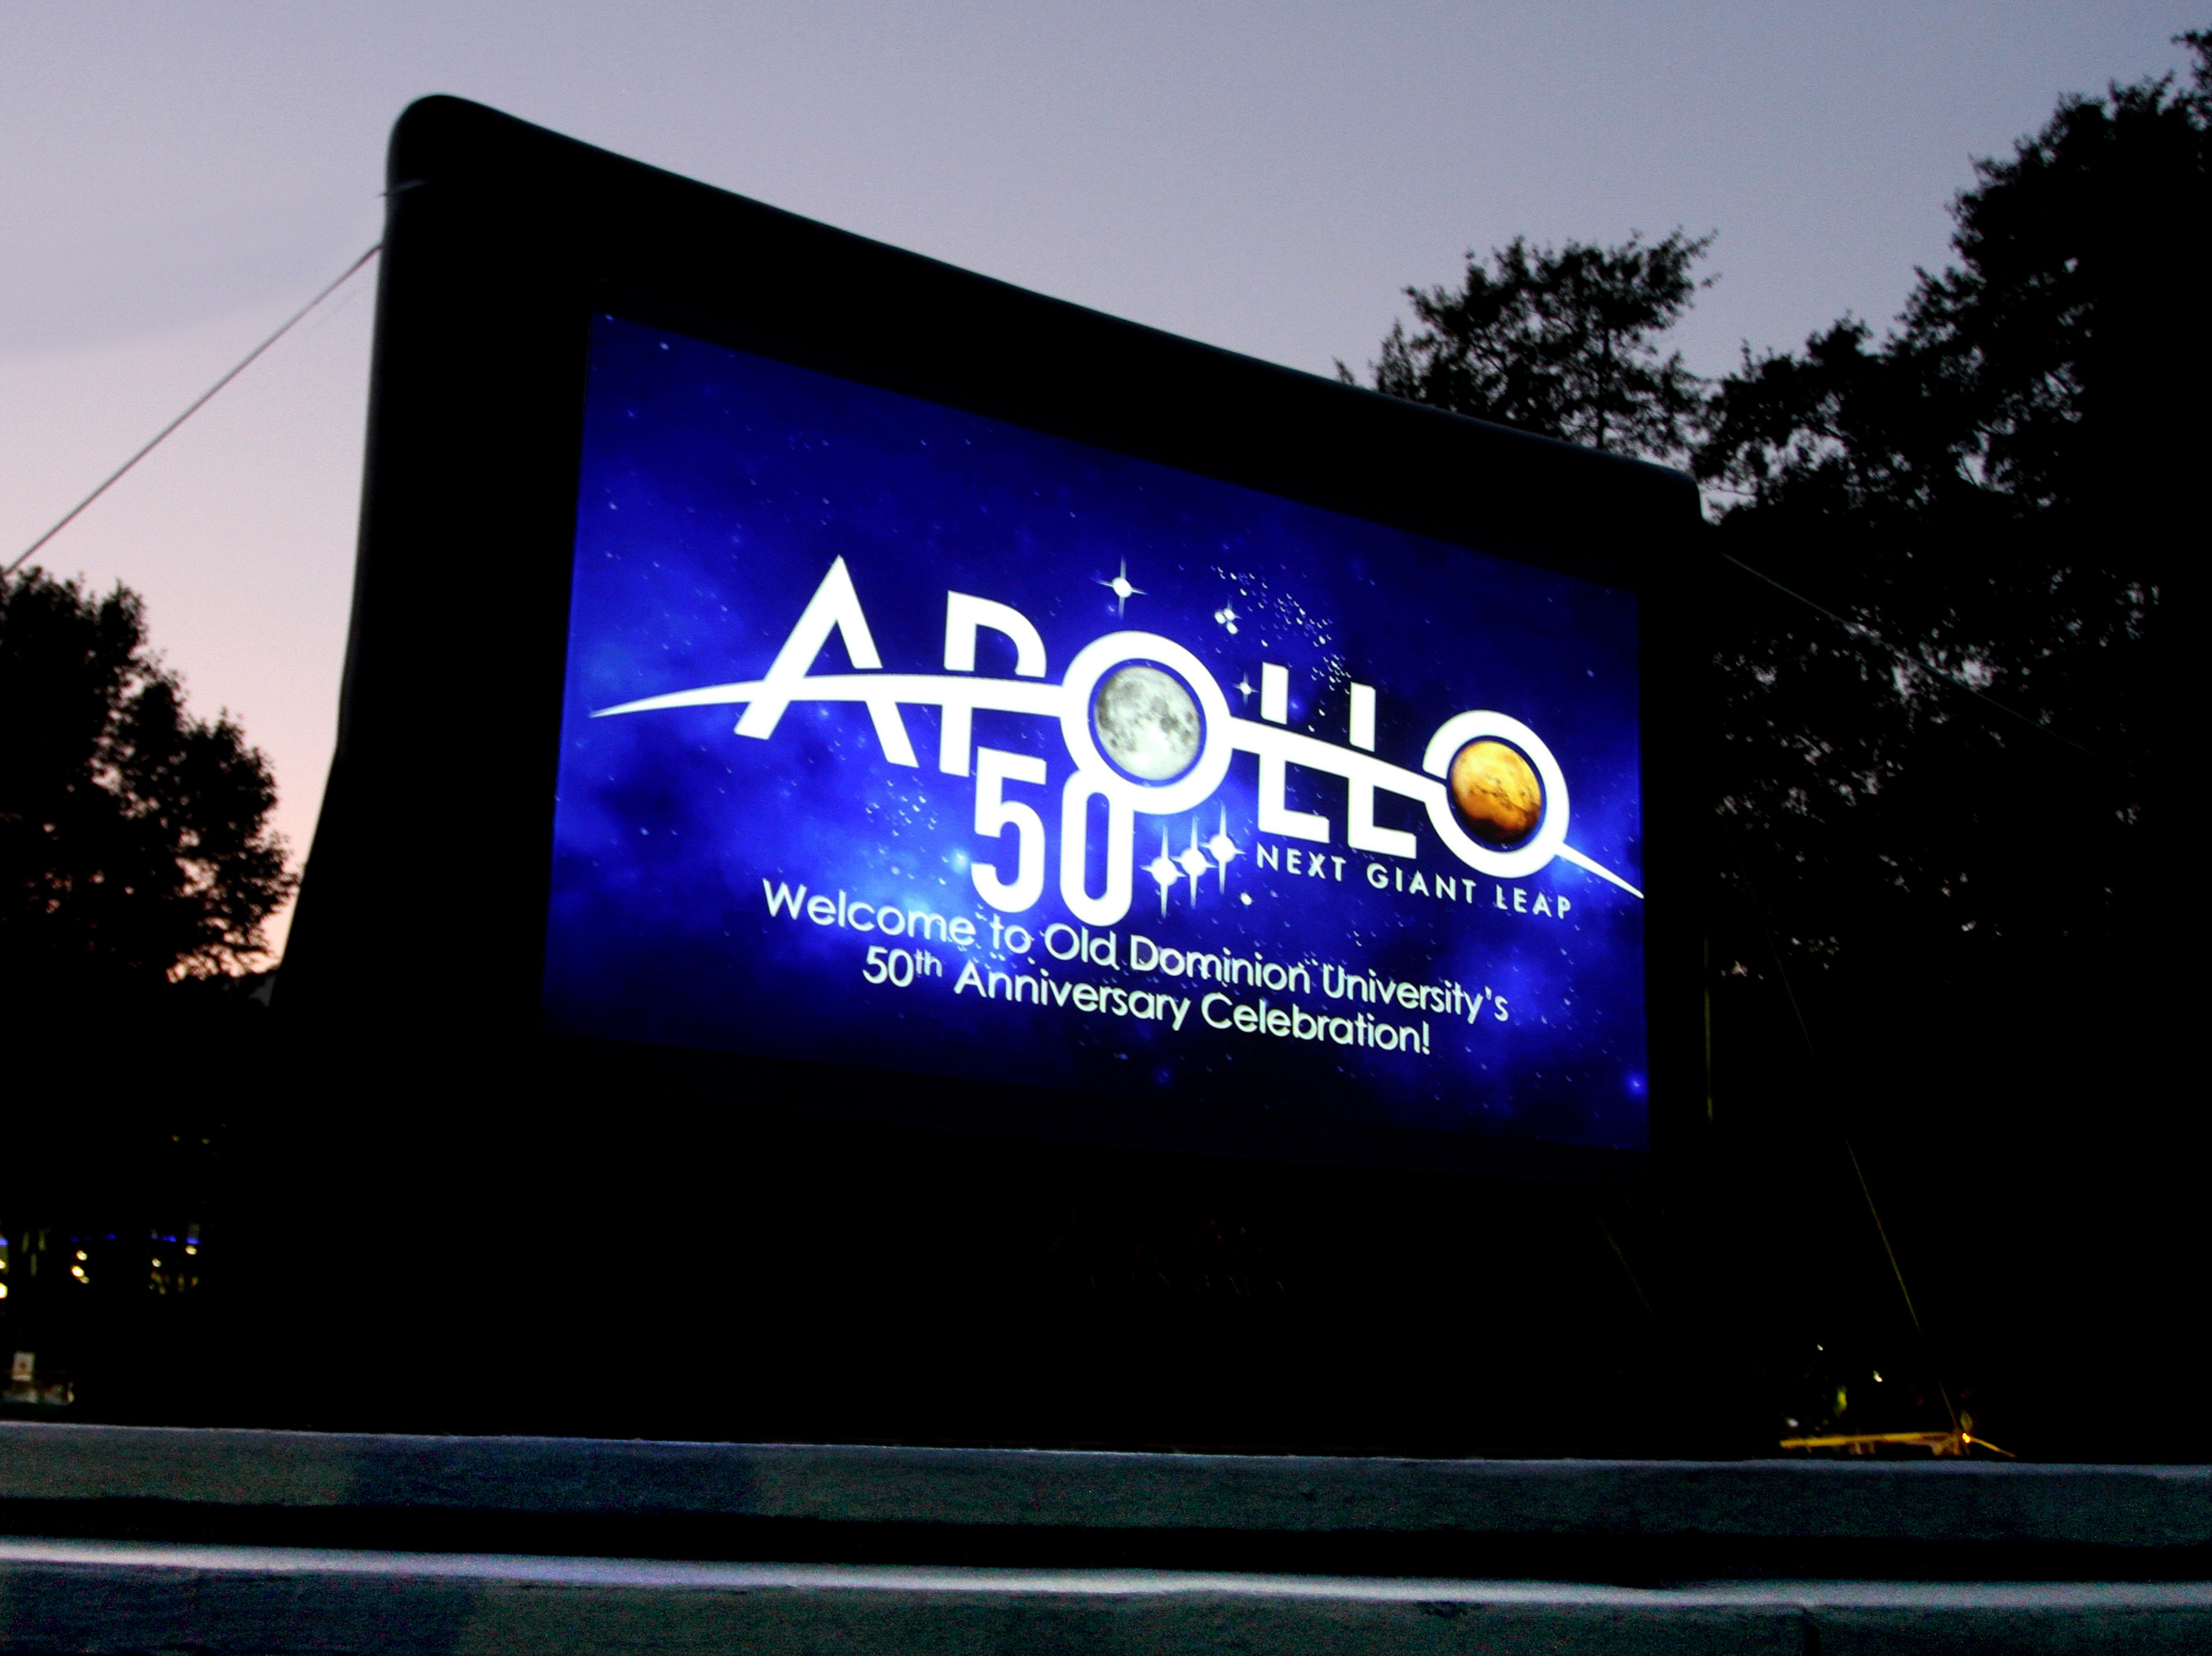 Celebrating Apollo's 50th Anniversary at ODU